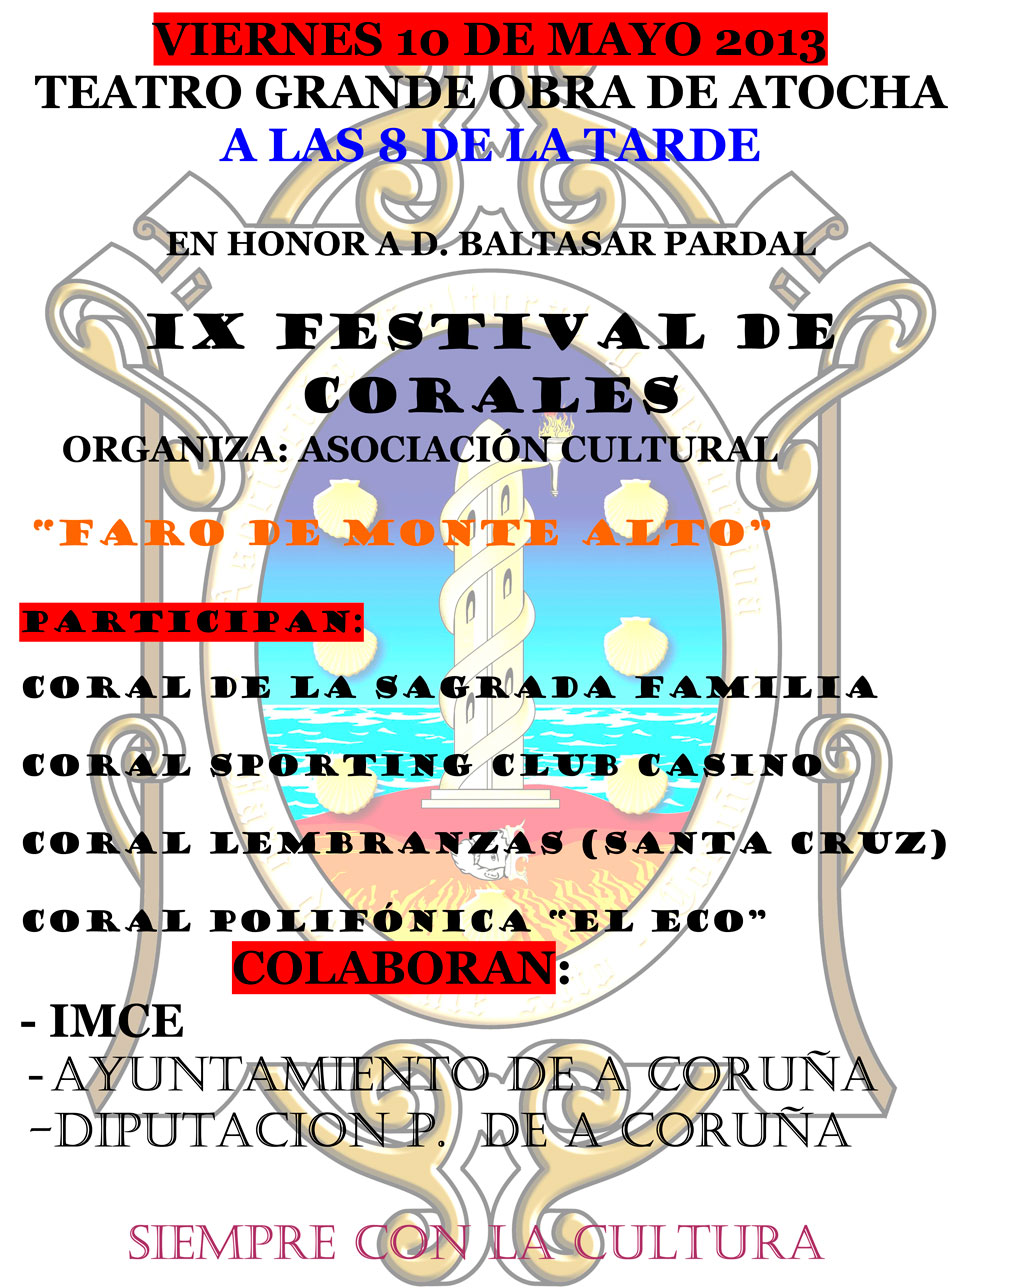 La A.C.D. “Faro de Monte Alto” organiza, el viernes 10, el “IX Festival de Corales”, en la Grande Obra de Atocha